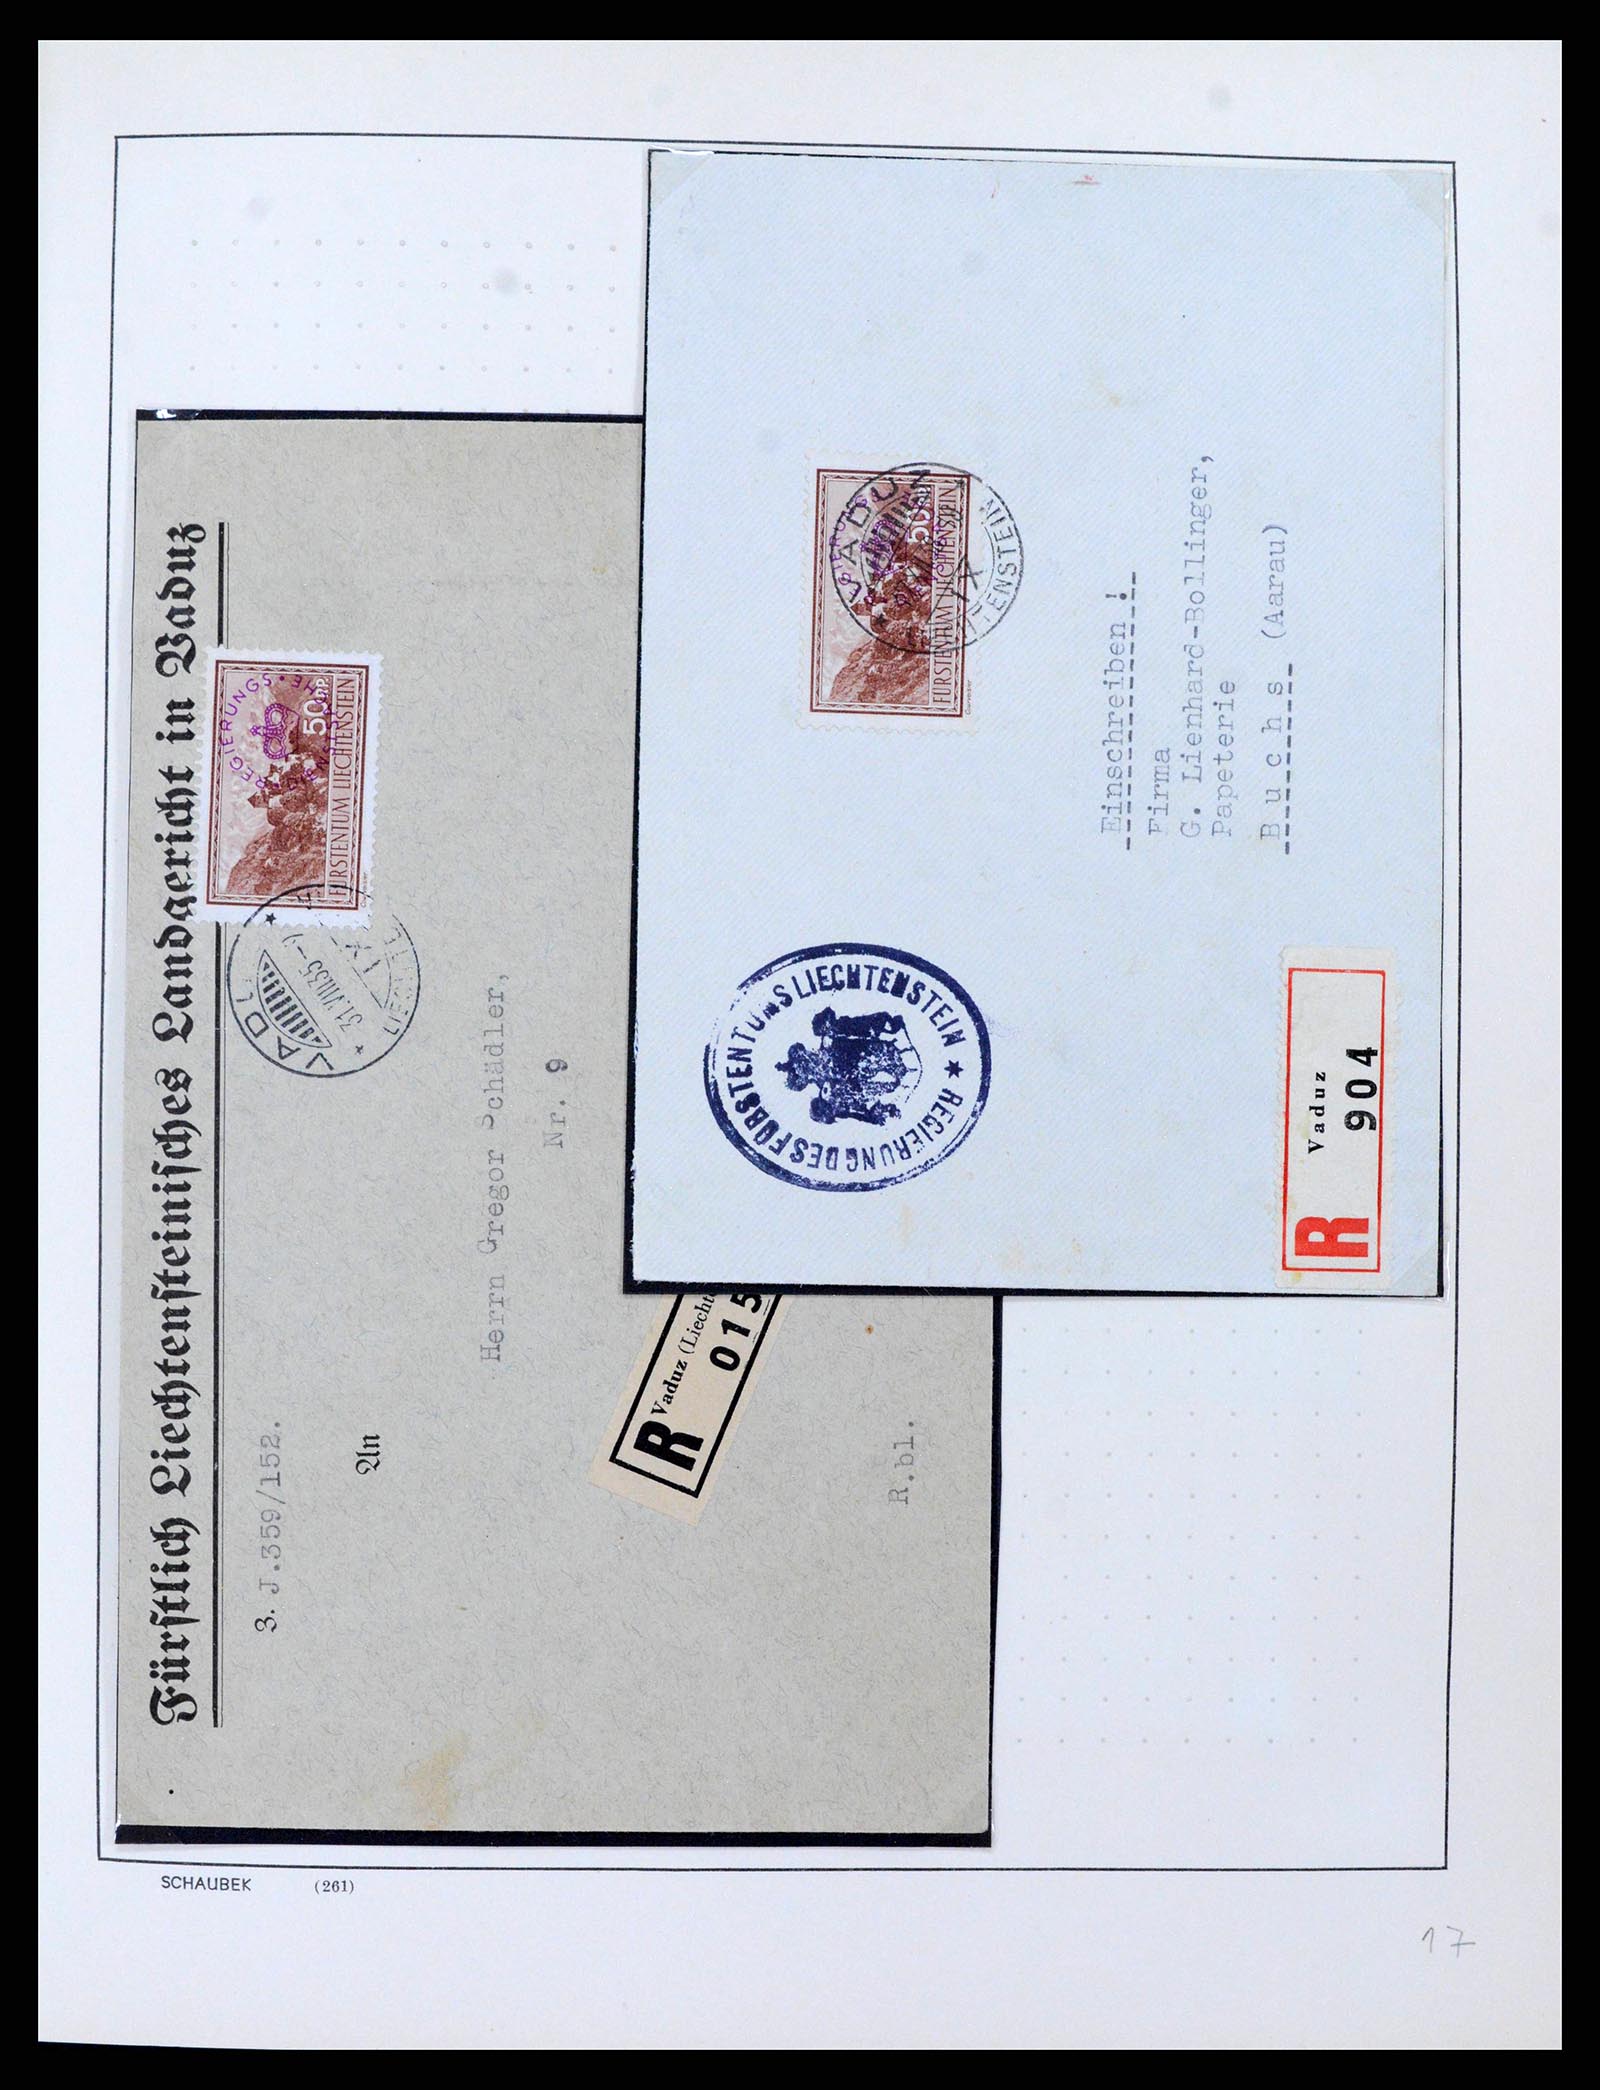 38204 0014 - Stamp collection 38204 Liechtenstein service covers 1932-1989.